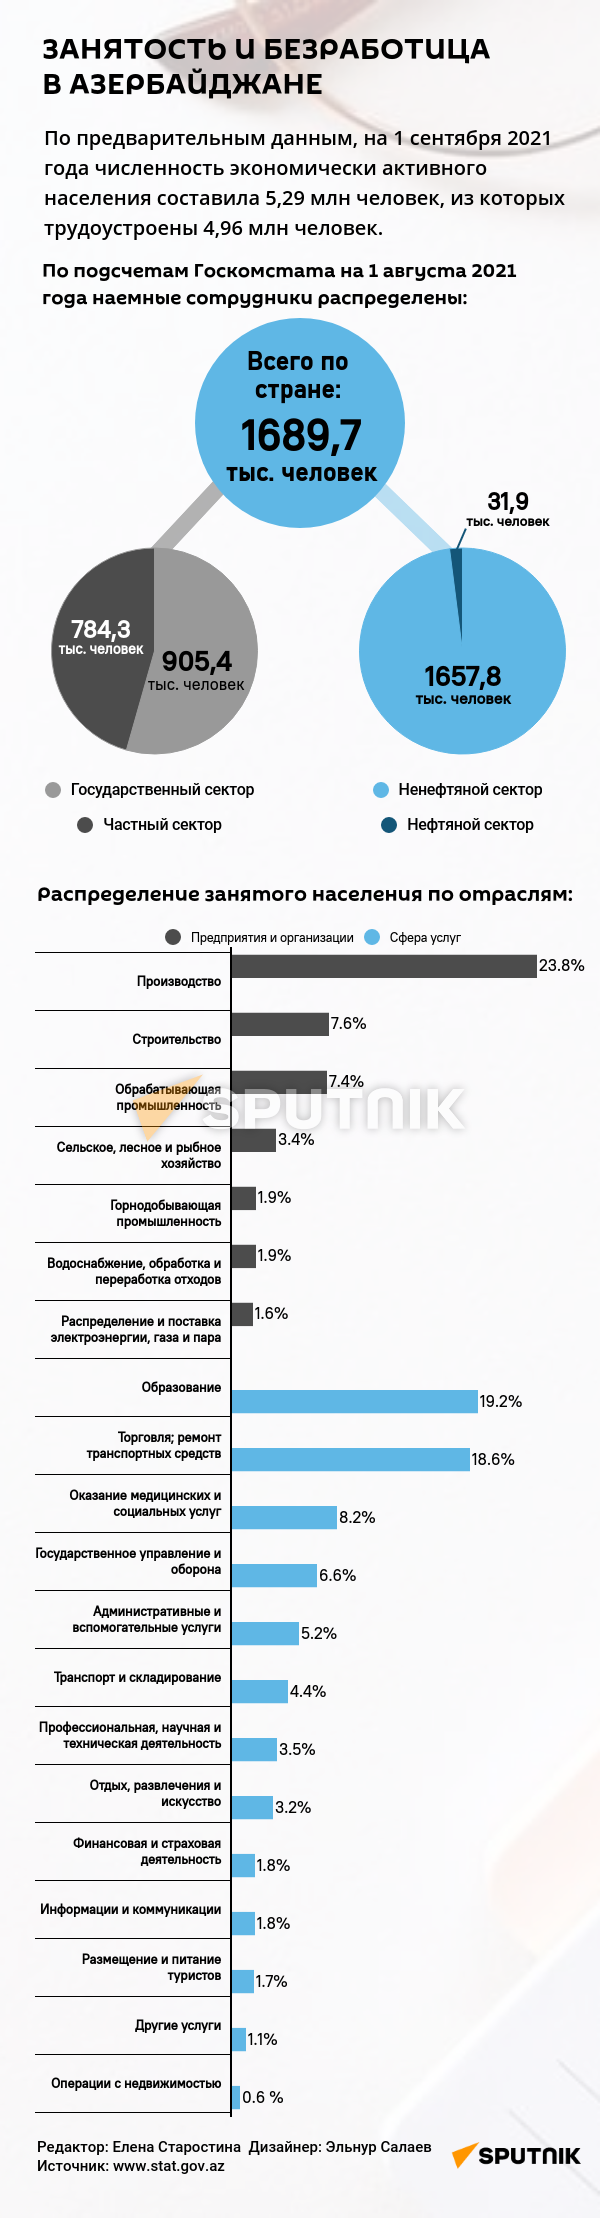 Инфографика: занятость и безработица в Азербайджане - Sputnik Азербайджан